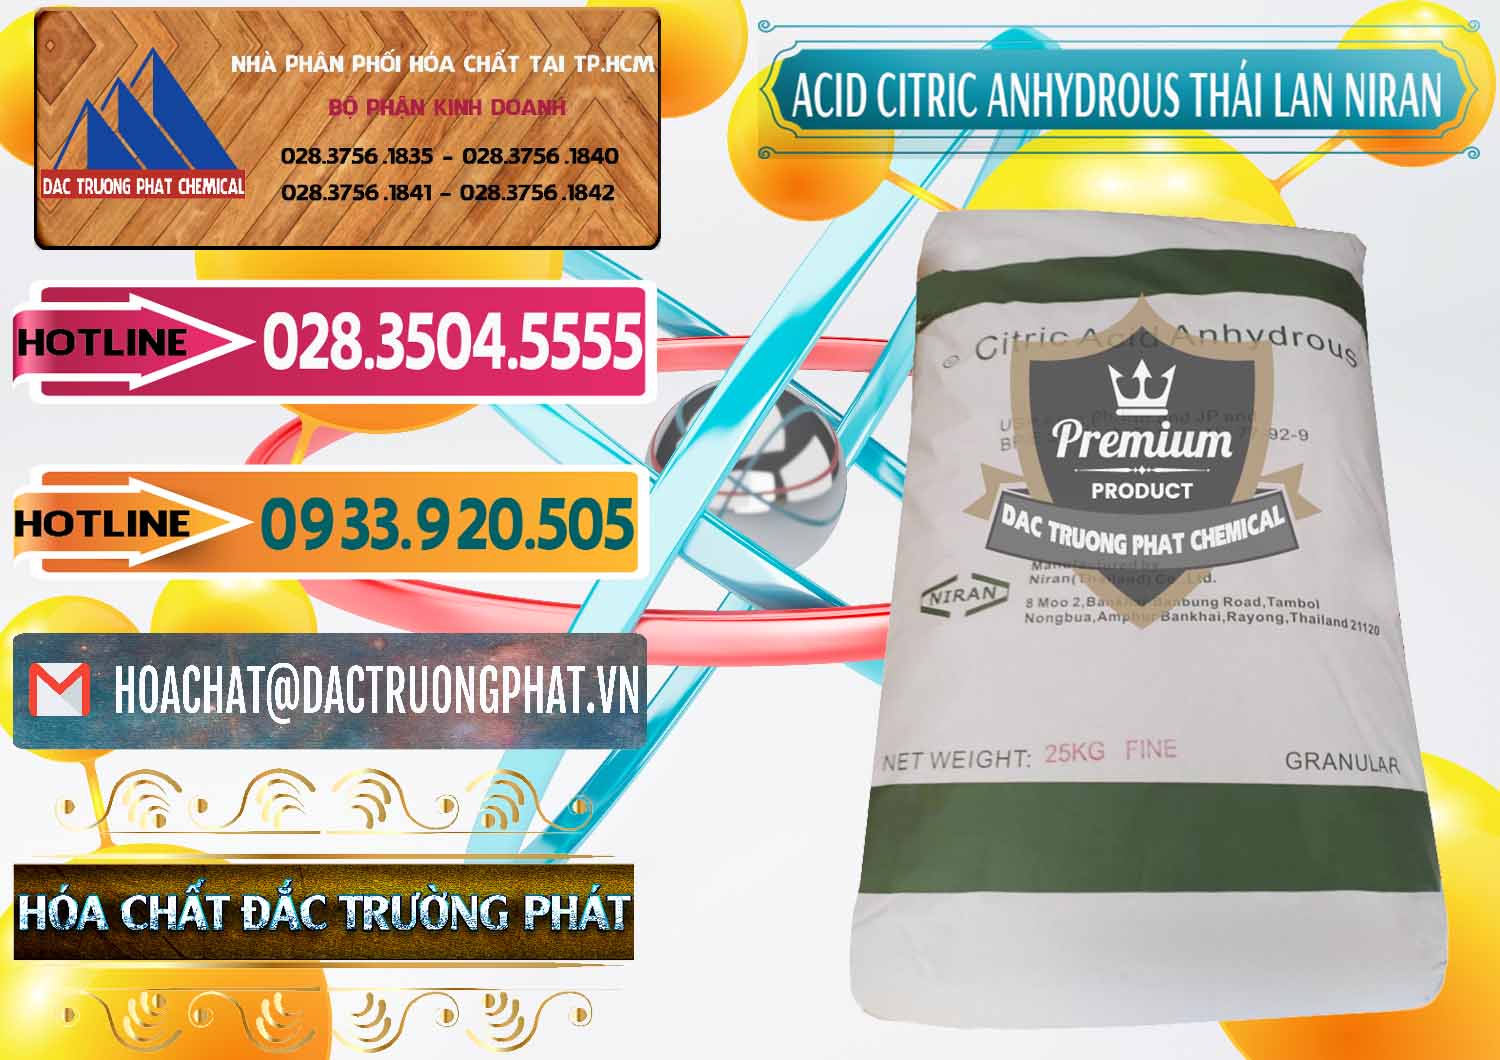 Nơi cung cấp - bán Acid Citric - Axit Citric Anhydrous - Thái Lan Niran - 0231 - Công ty chuyên kinh doanh _ cung cấp hóa chất tại TP.HCM - dactruongphat.vn